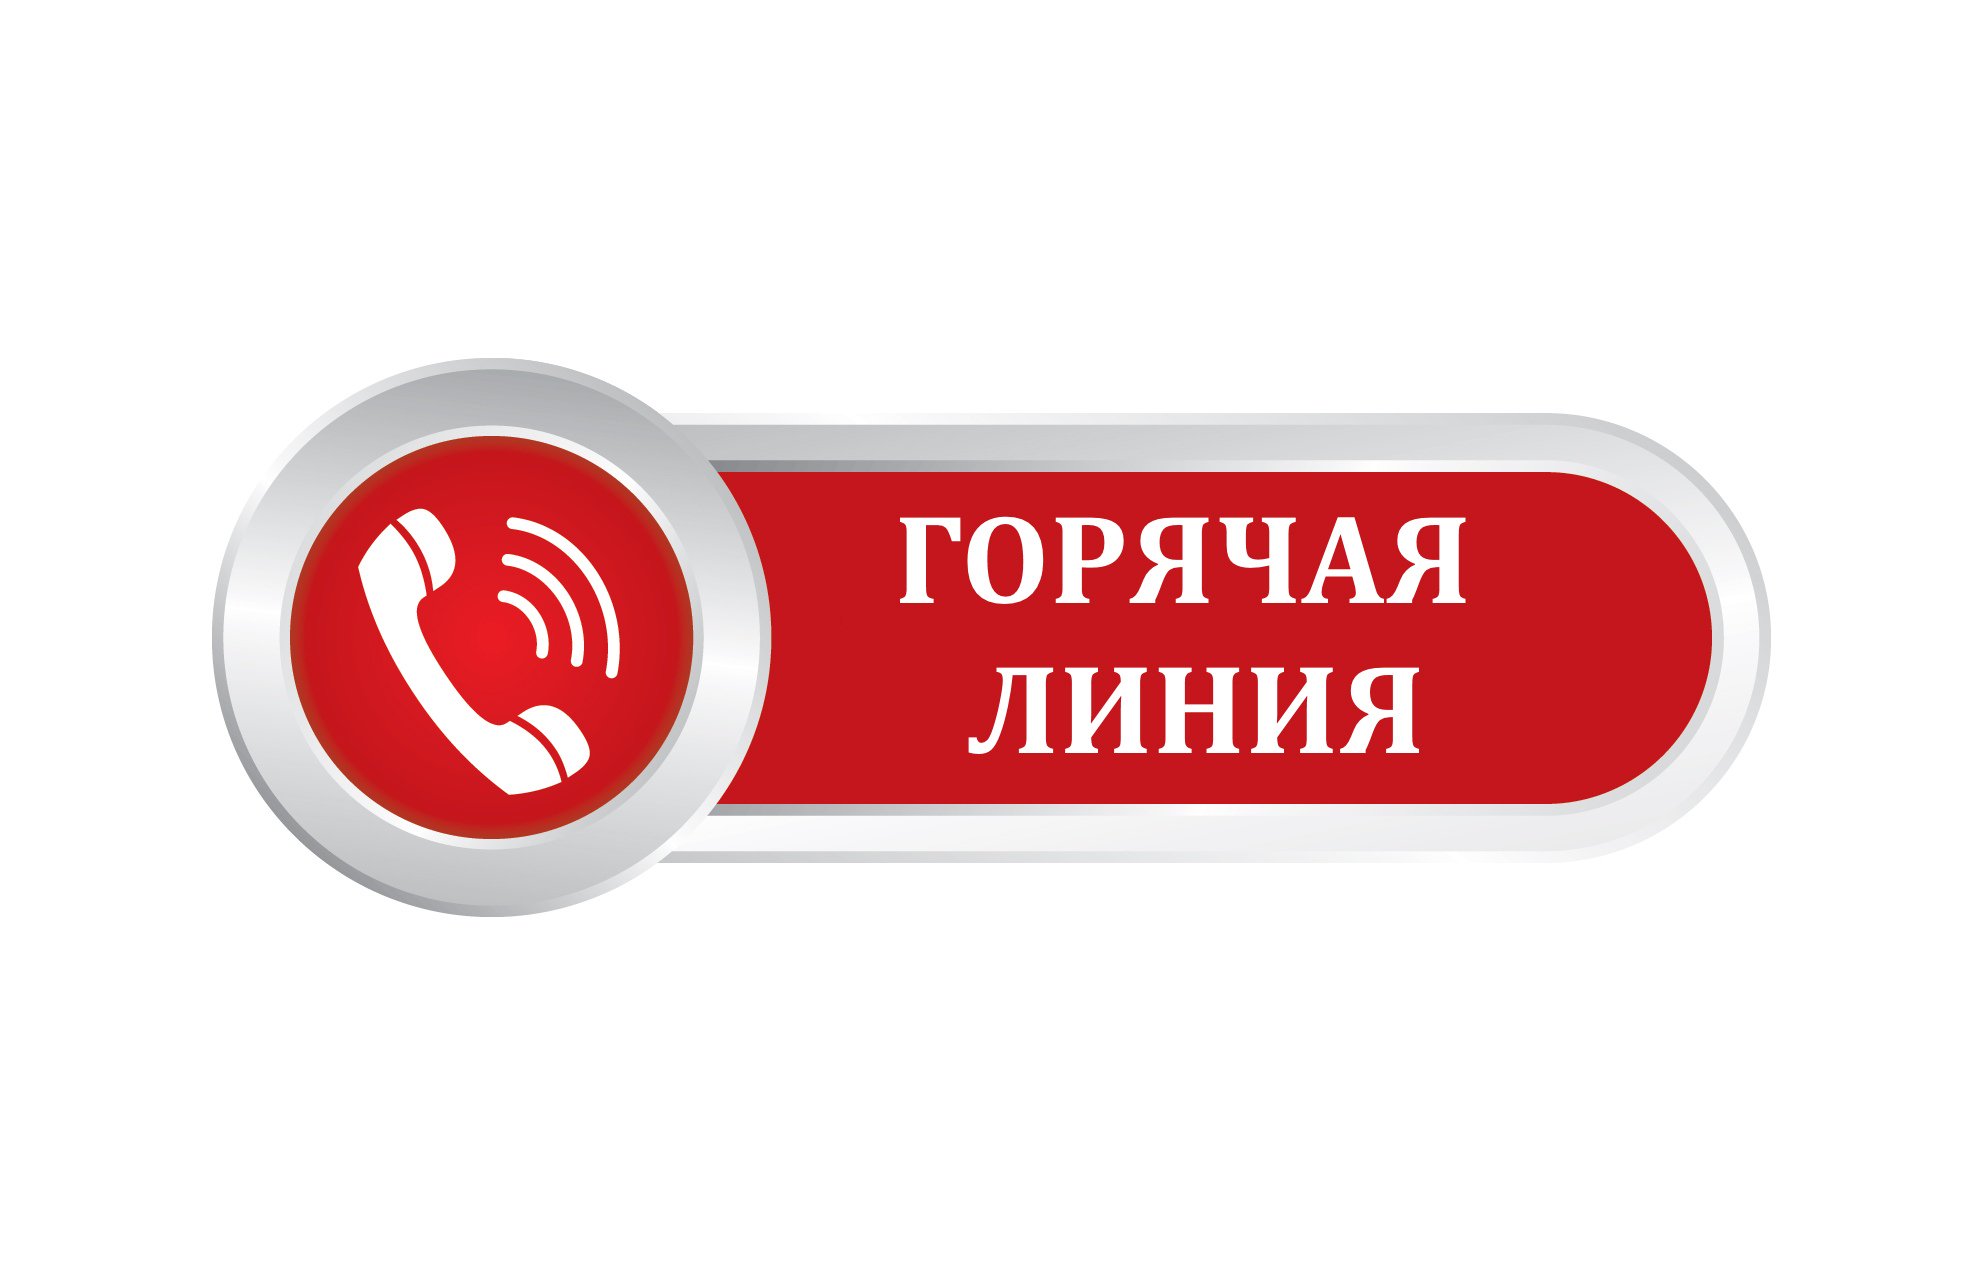 Прокуратурой Красногвардейского района организованна «Горячая линия» по вопросам прибывших из приграничных районов граждан РФ.